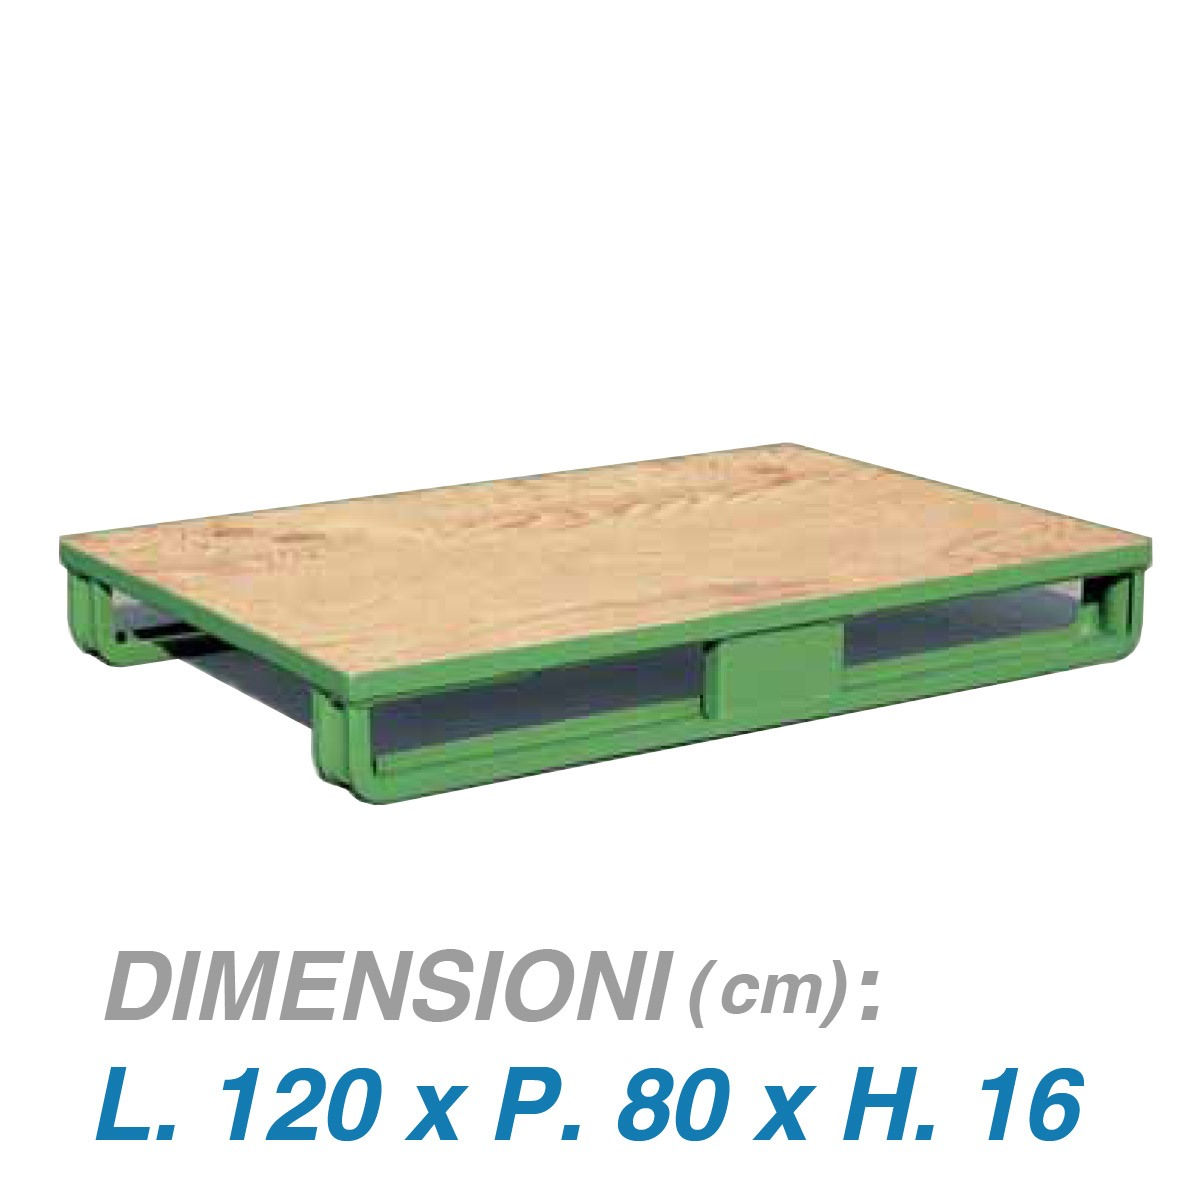 Pedana su slitte con base pressopiegata e fondo in legno - Dim. 120x80x16 -  Portata: 1000 kg.